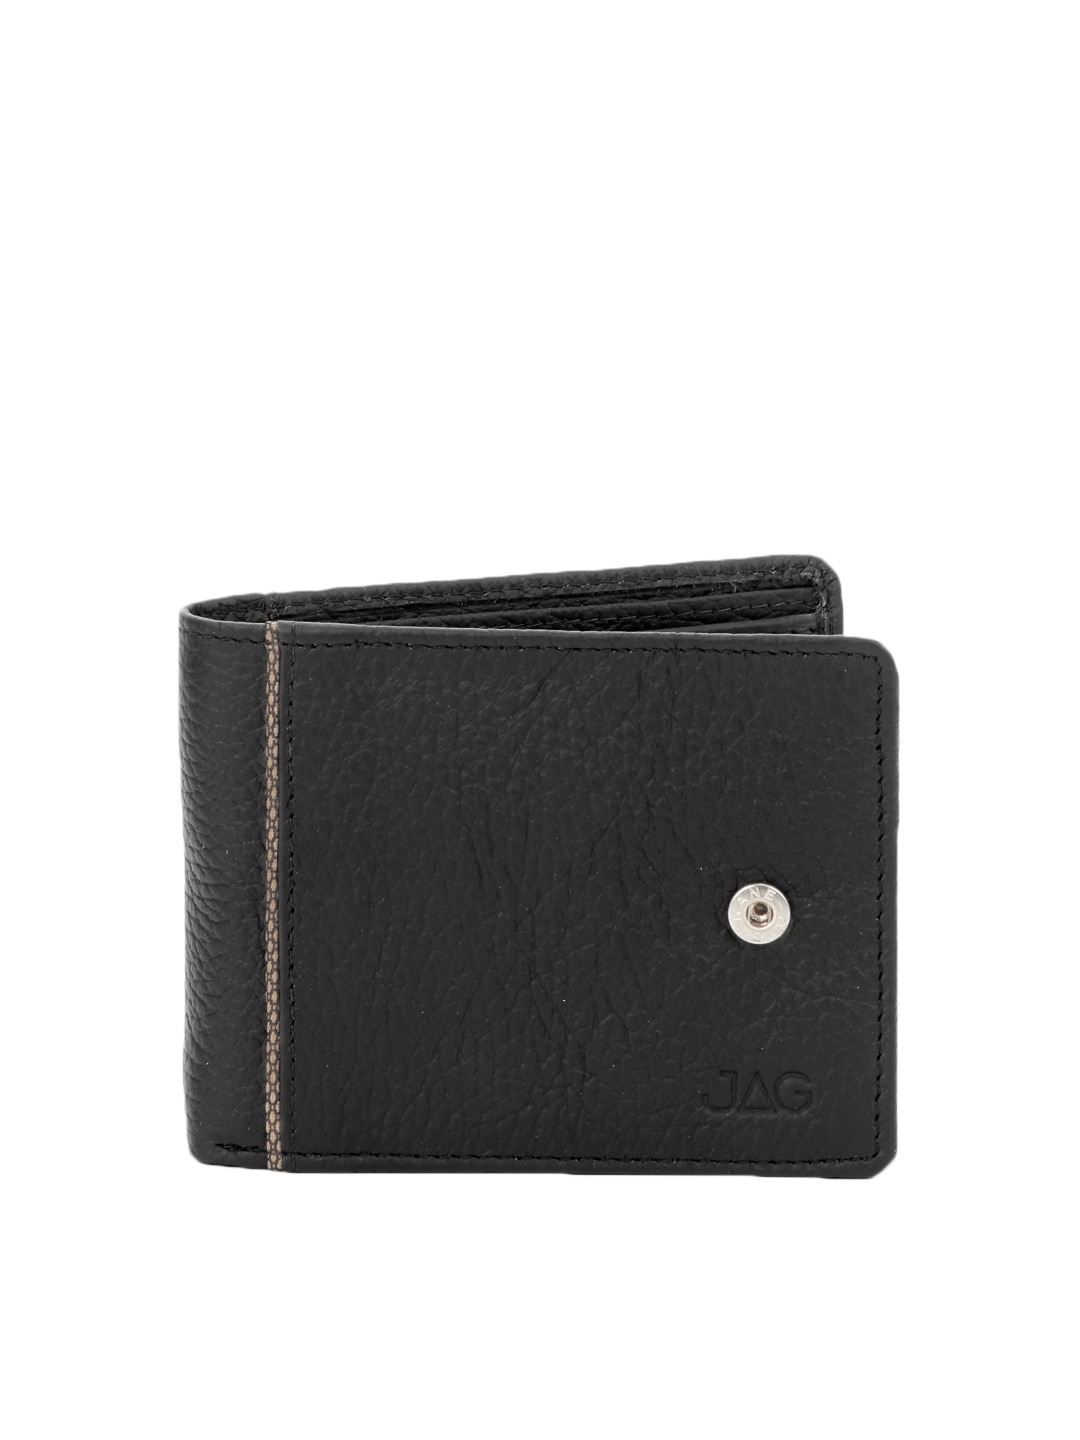 JAG Men Black Leather Wallet